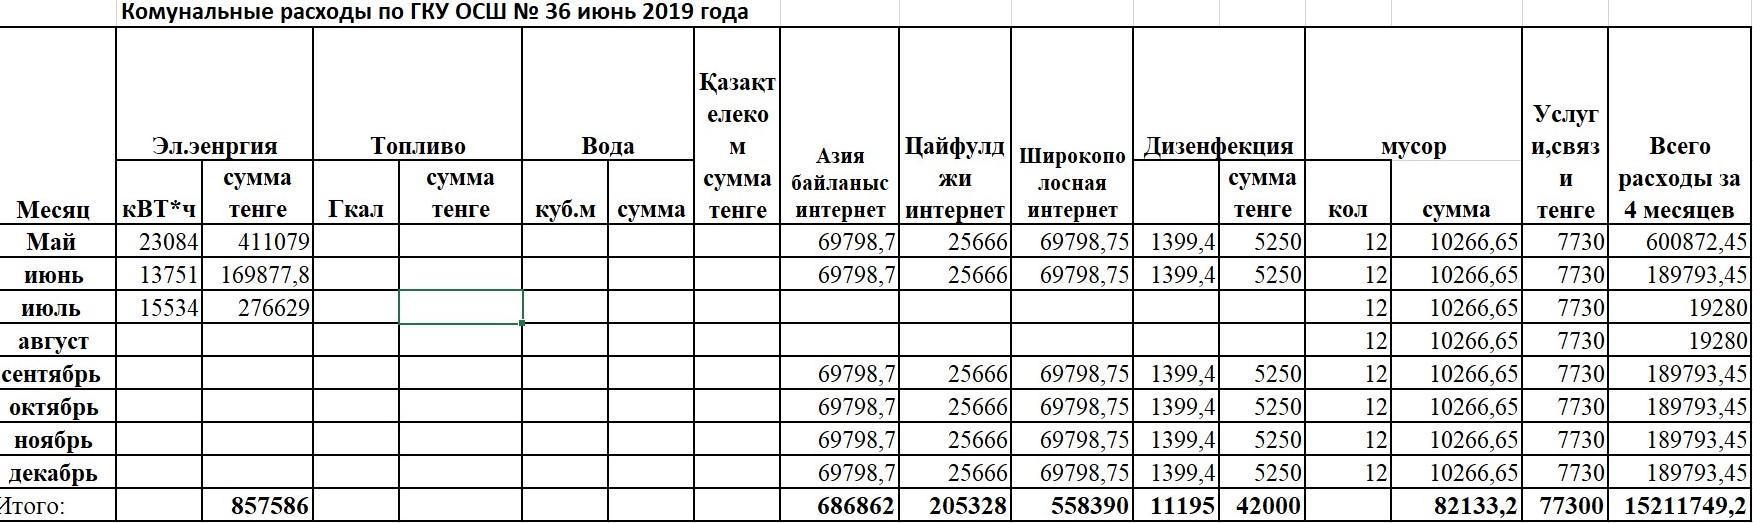 коммунальные  расходы по ГКУ ОСШ №36 за июнь 2019 года